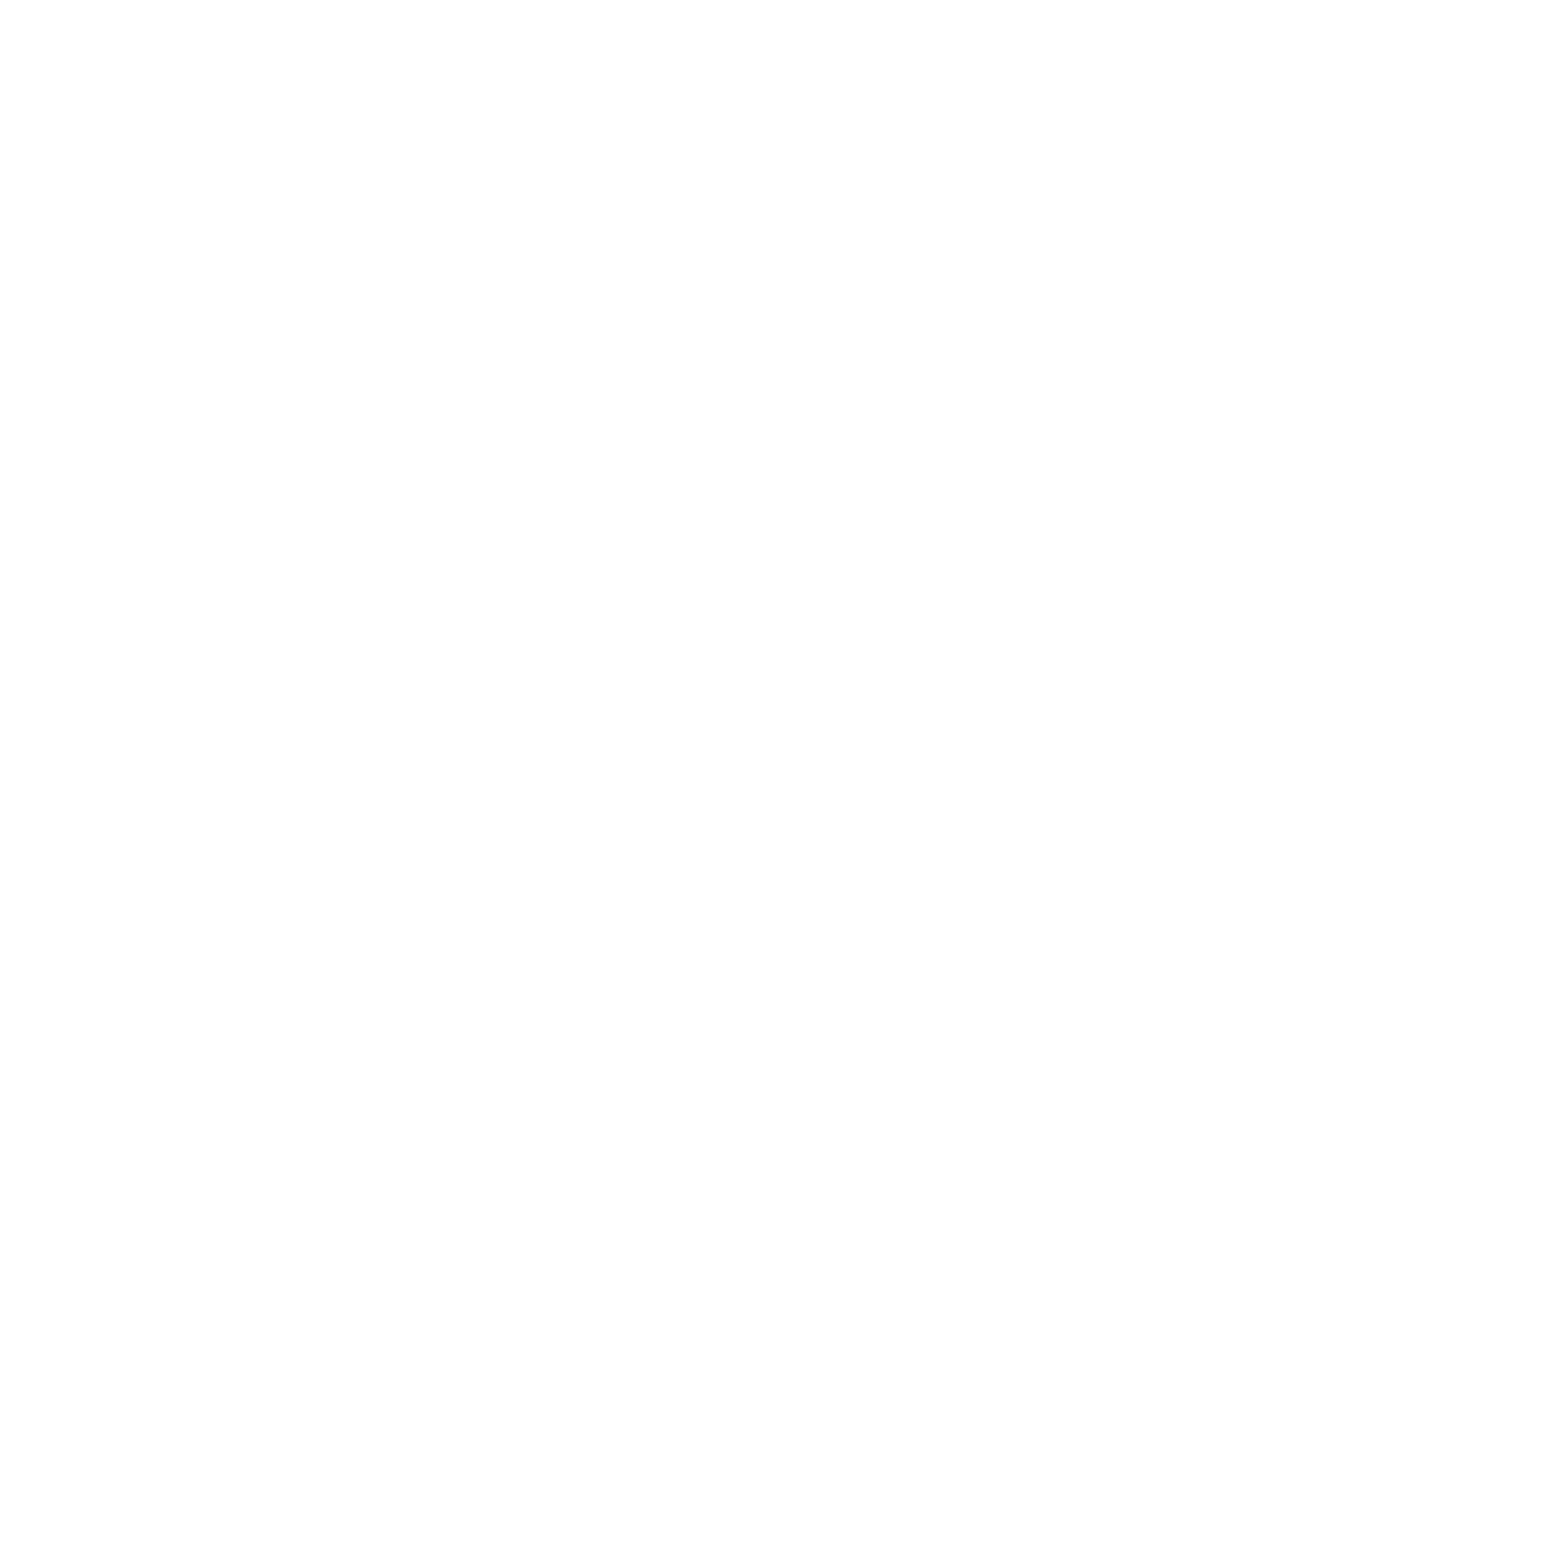 Zurich Insurance Group logo pour fonds sombres (PNG transparent)